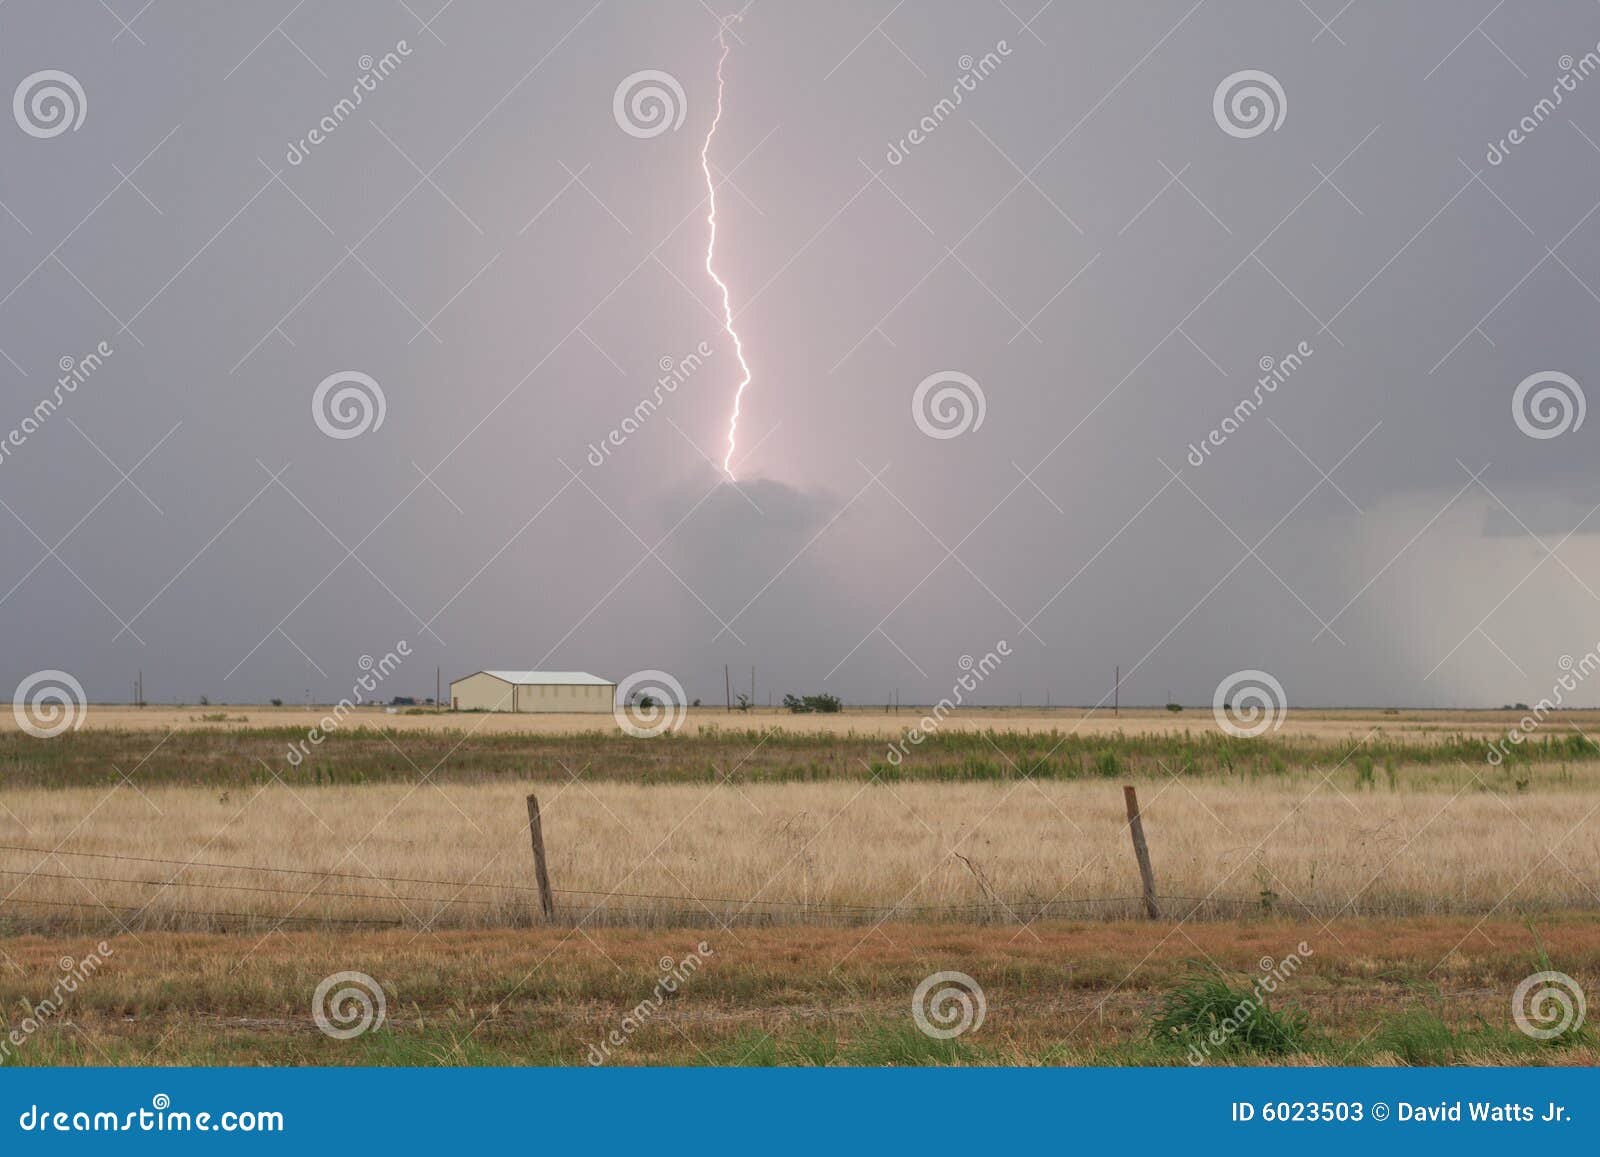 high plains lightning